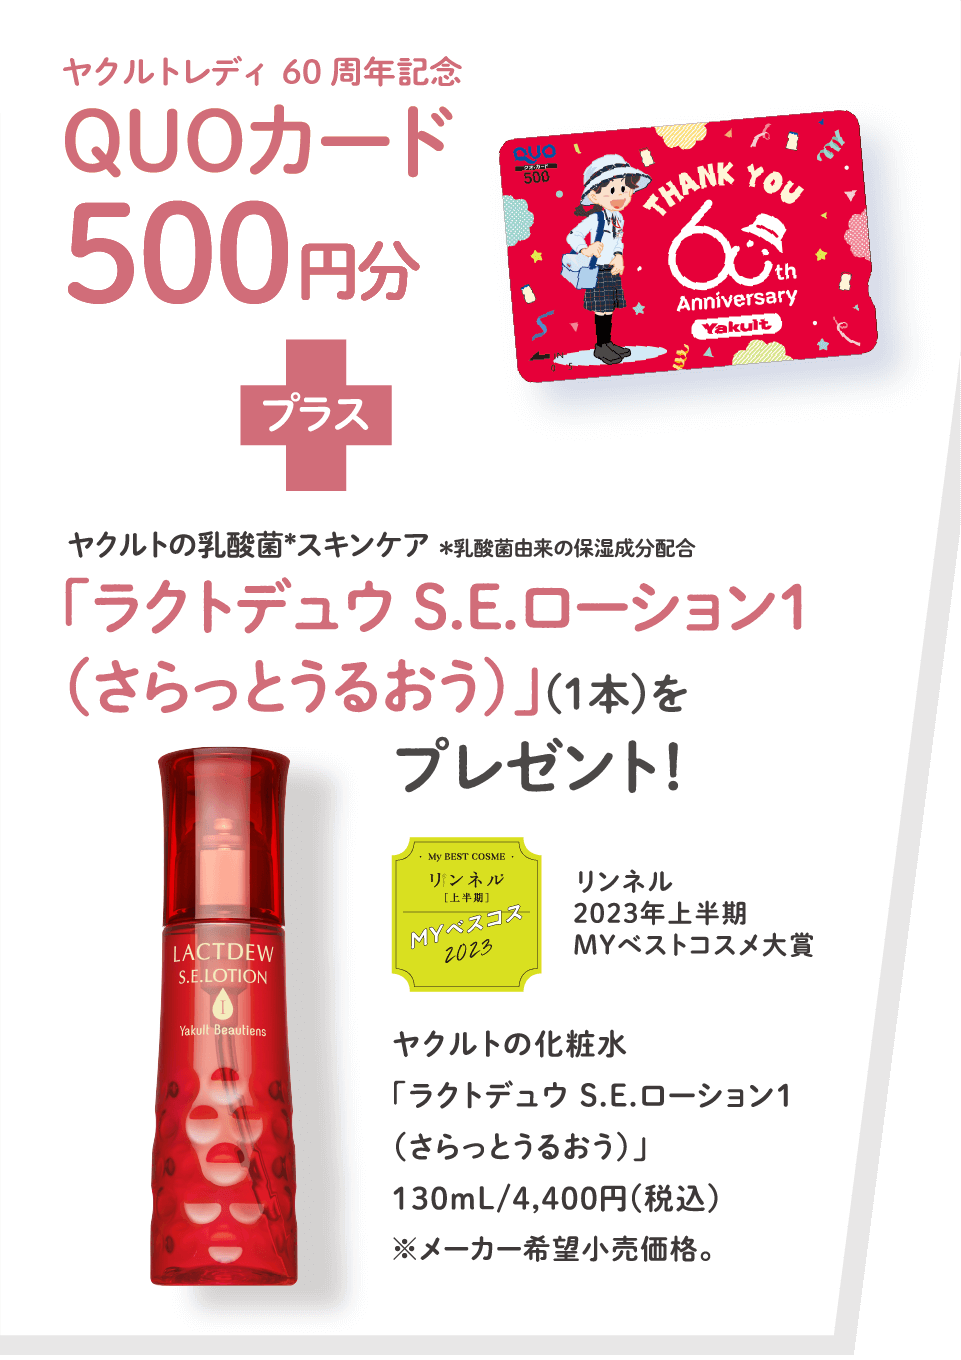 ヤクルトレディ60周年記念QUOカード 500円分